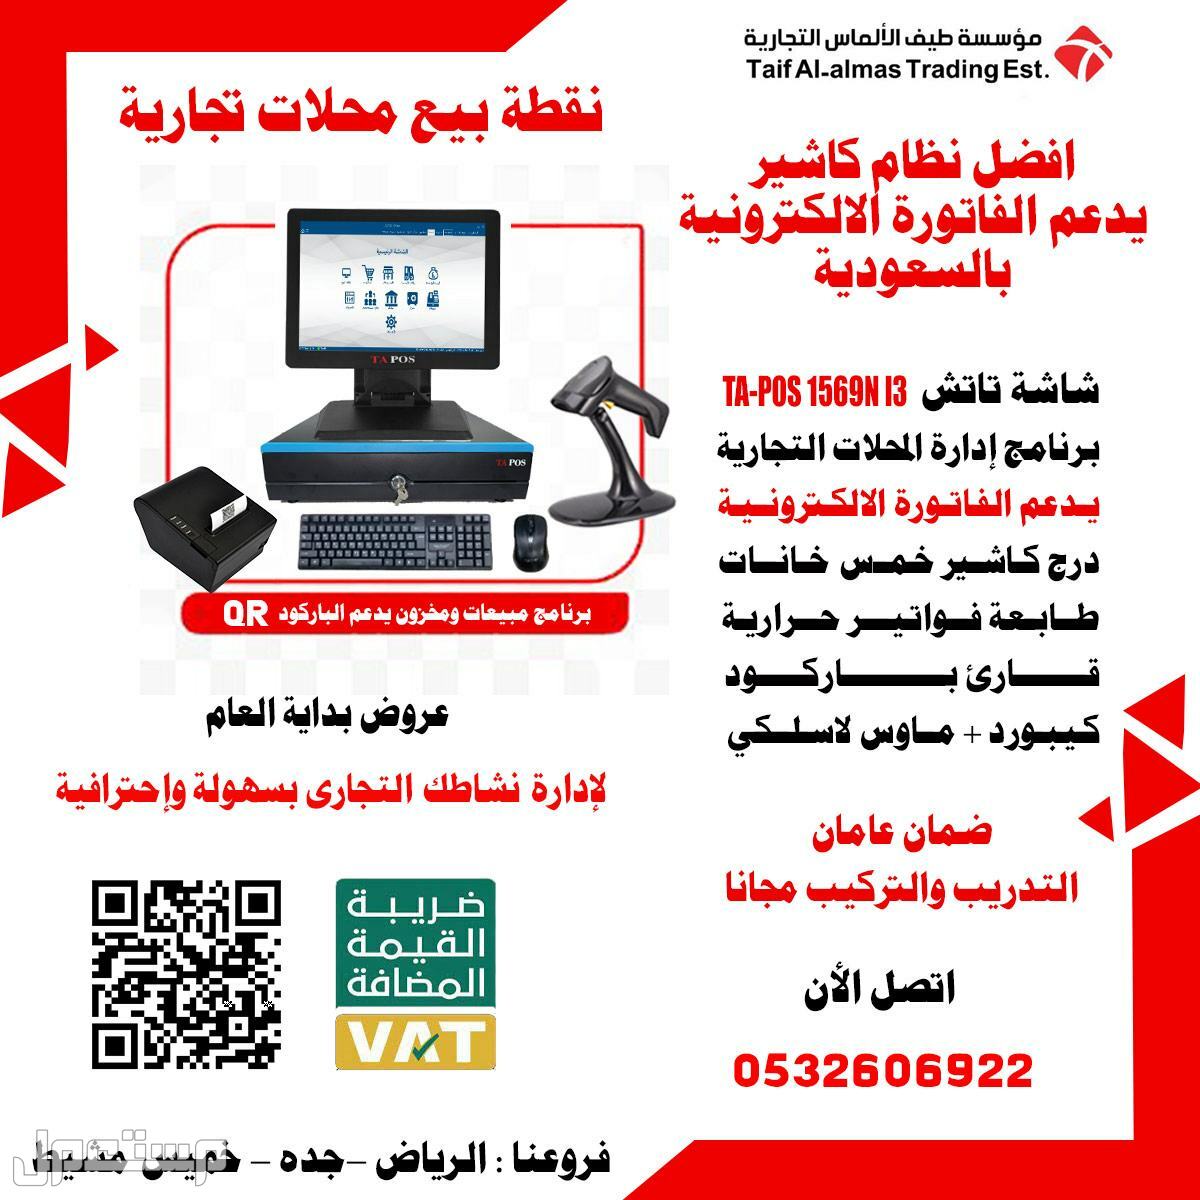 نظام كاشير الكترونية بالسعودية يدعم الفاتورة الالكترونية نظام الباركود QR